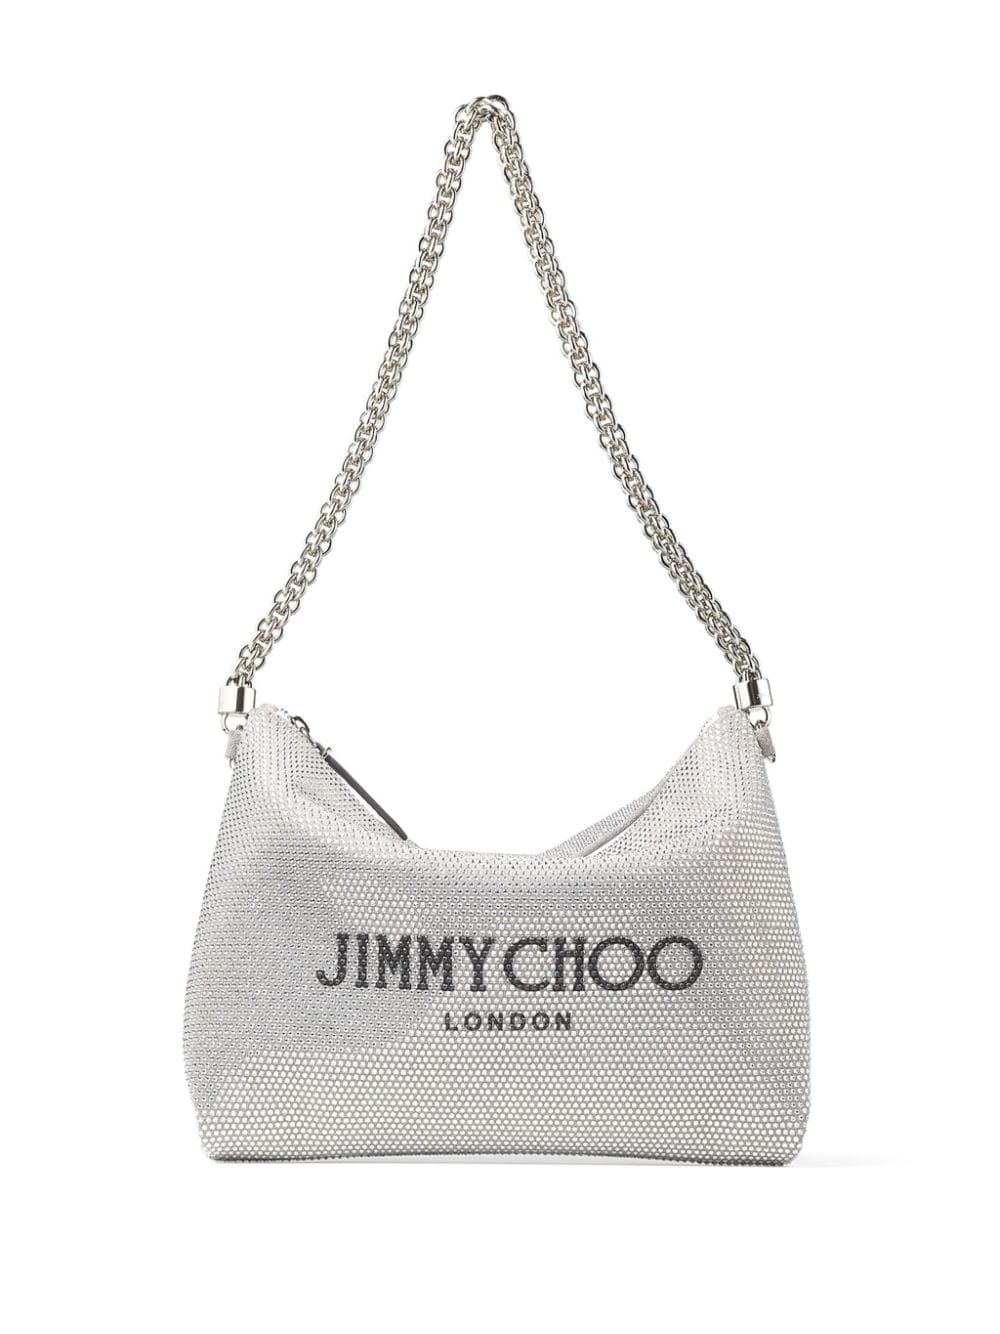 Jimmy Choo Callie crystal-embellished shoulder bag - Silver von Jimmy Choo